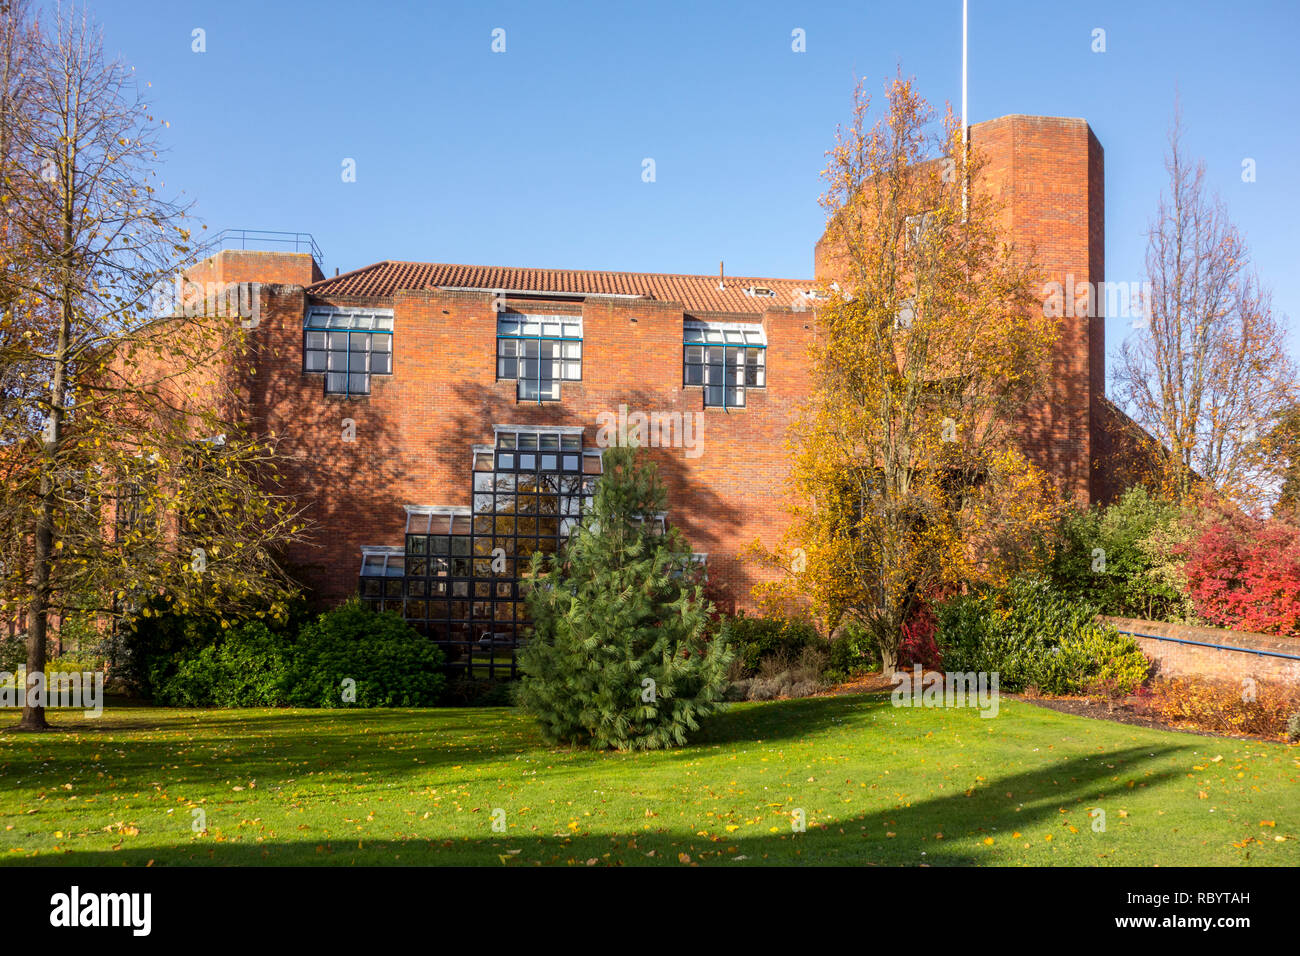 Robinson College, Université de Cambridge, fondé en 1977 et l'un des plus nouveaux collèges Oxbridge. Grange Road, Cambridge, Royaume-Uni Banque D'Images